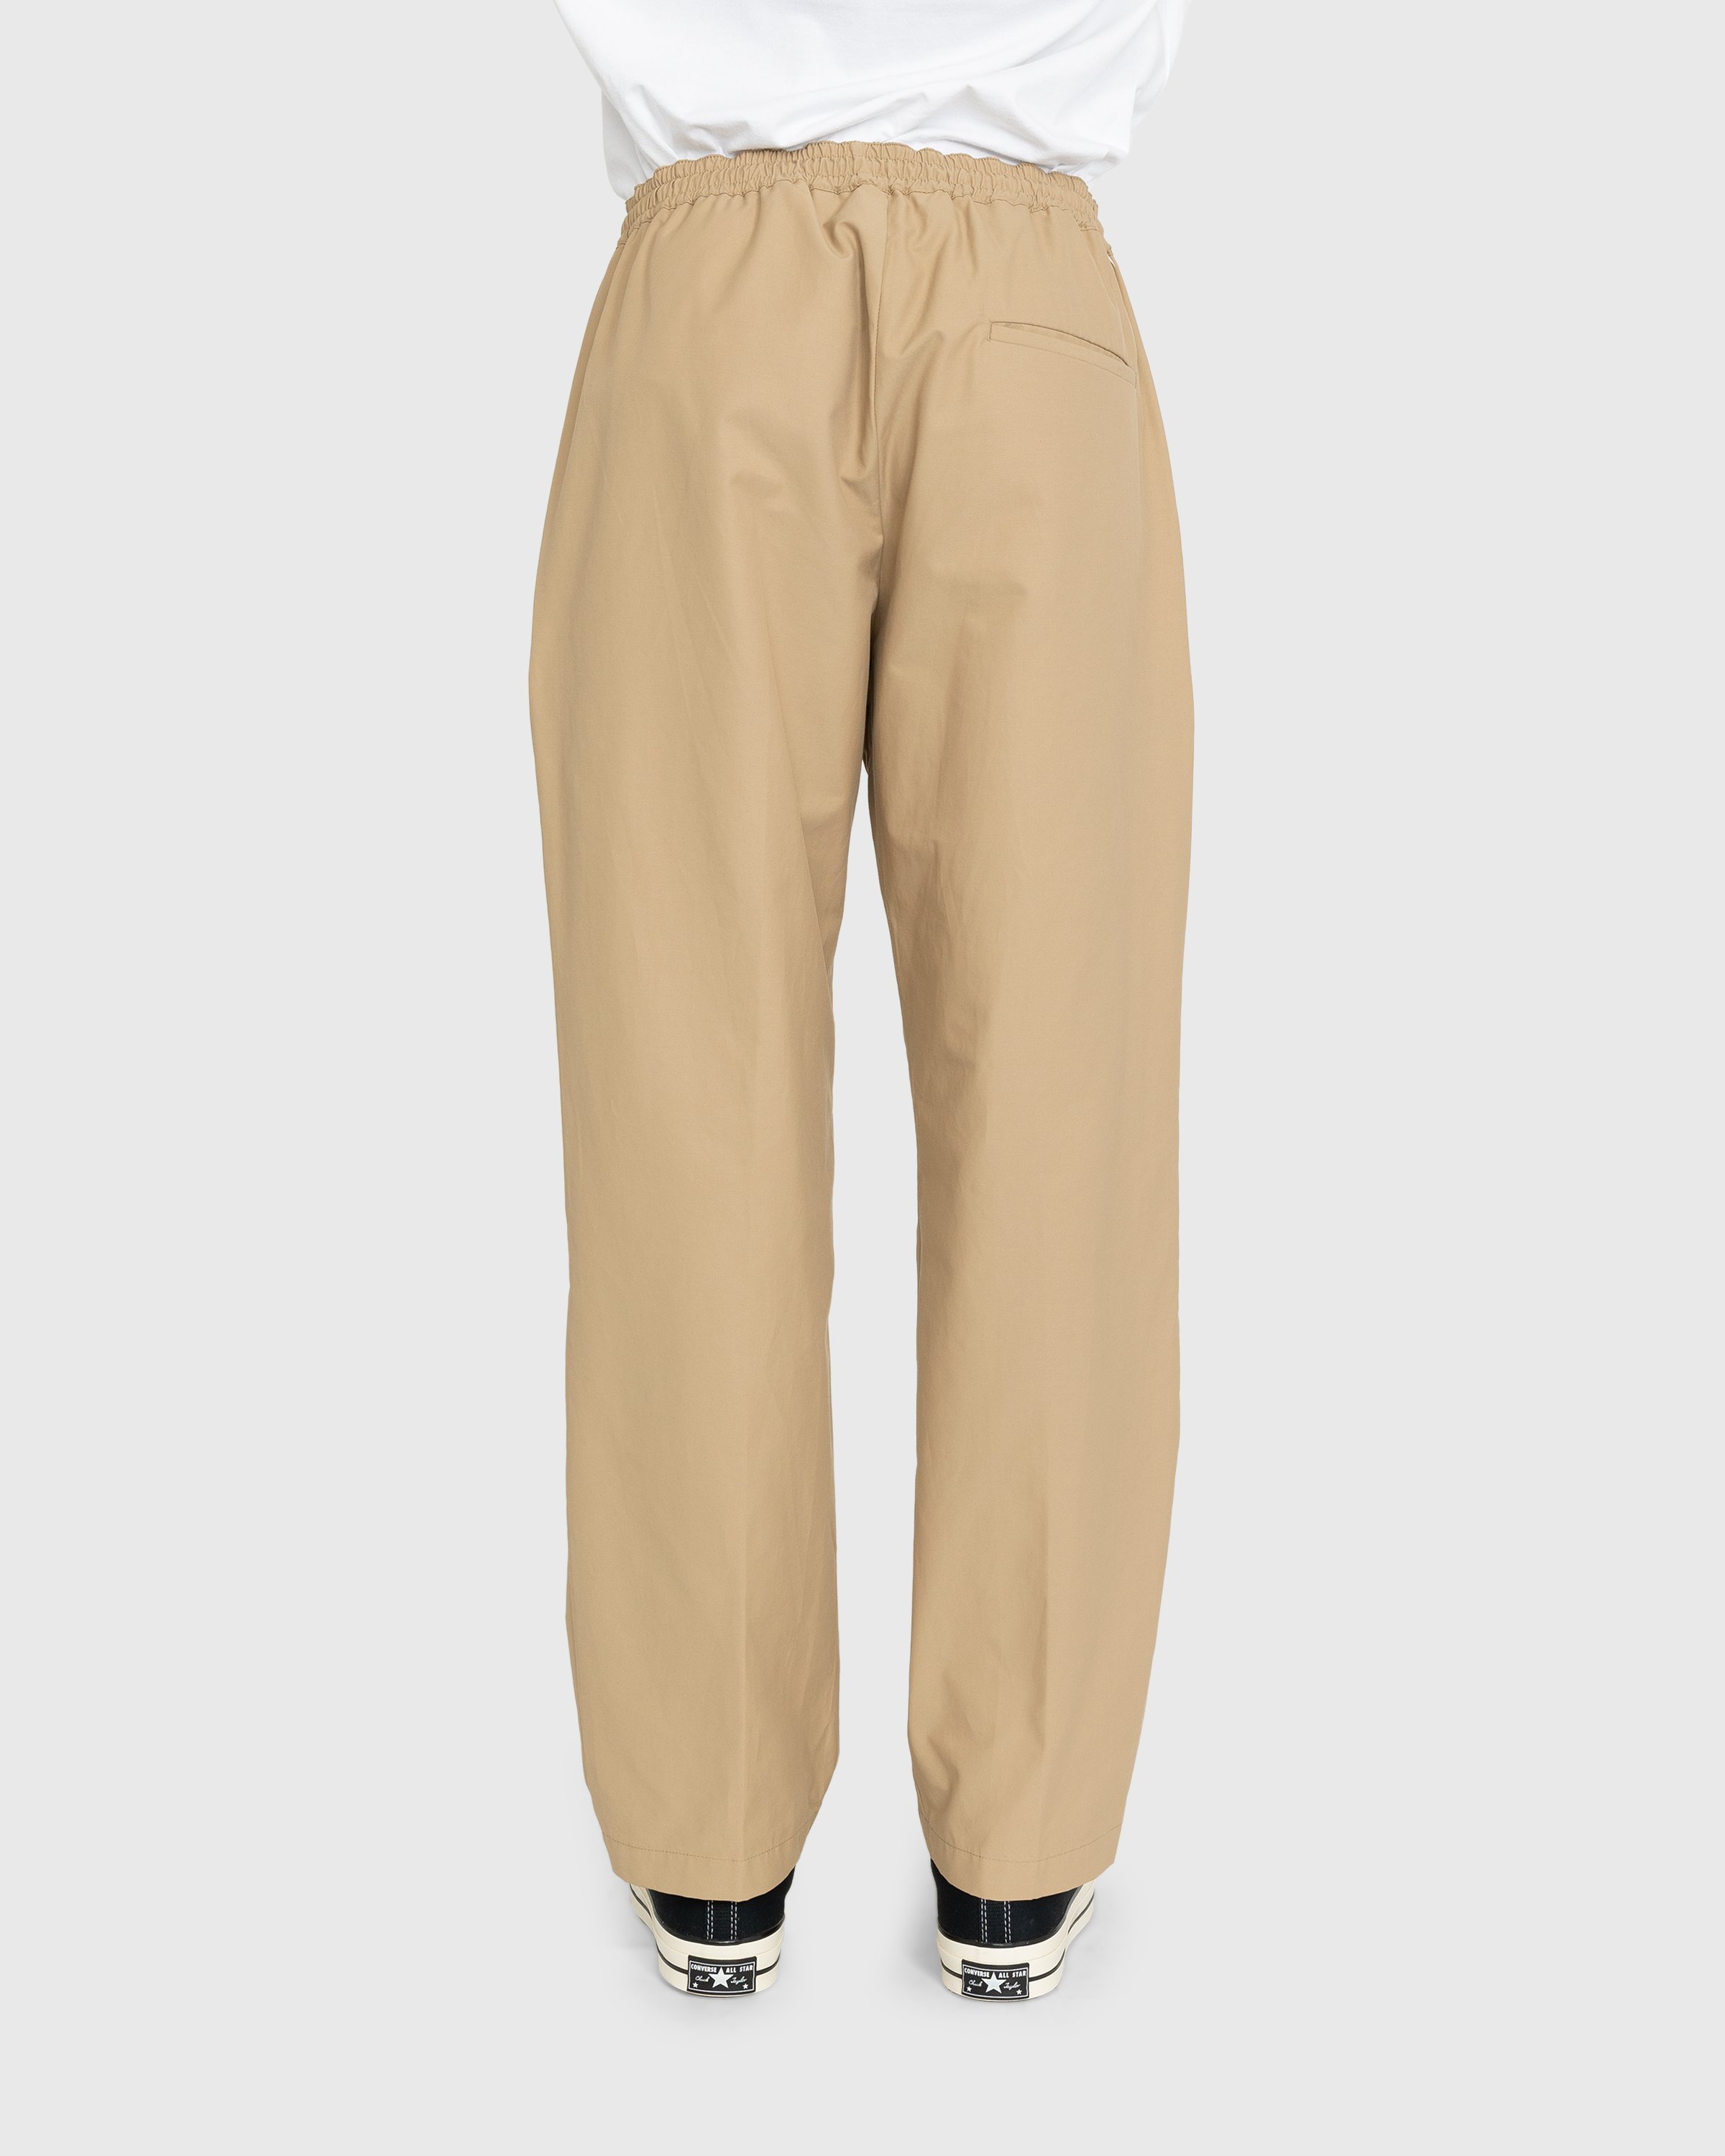 Highsnobiety - Cotton Nylon Elastic Pants Beige - Clothing - Beige - Image 4